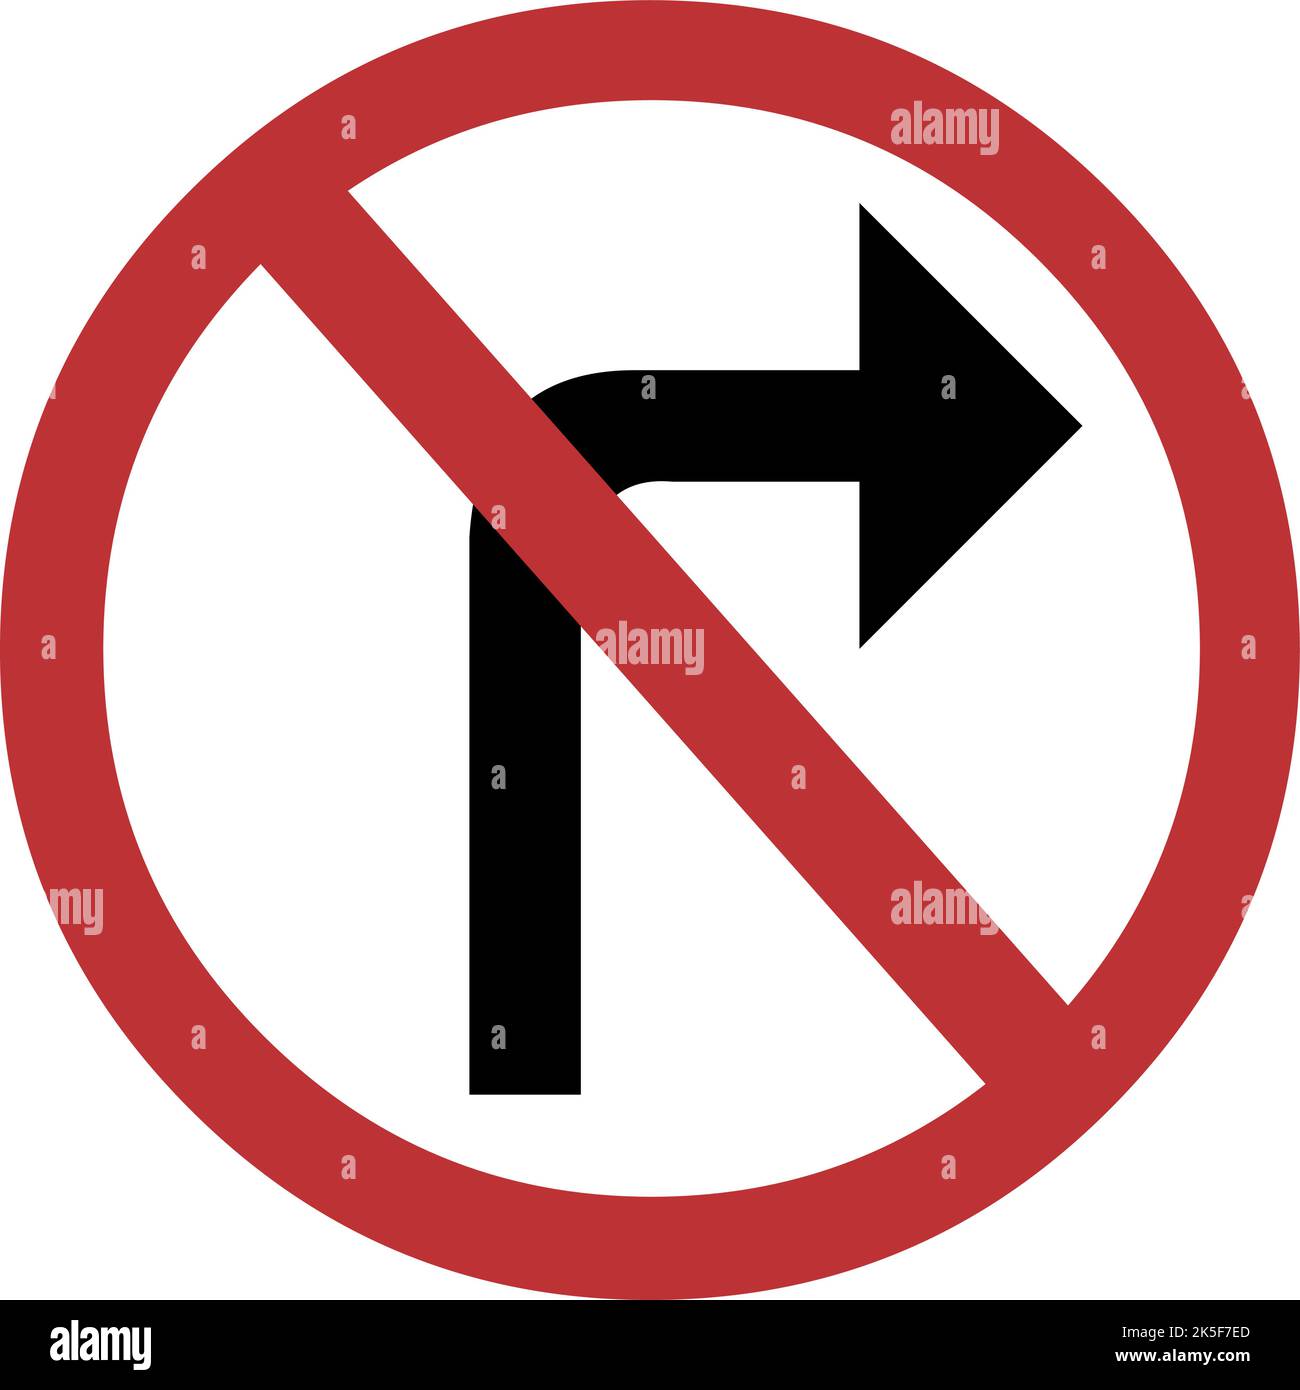 Vektordarstellung des verbotenen Verkehrszeichens mit einem gebogenen schwarzen Pfeil nach rechts, auf einem kreisförmigen Hintergrund in rot-weißer Farbe Stock Vektor